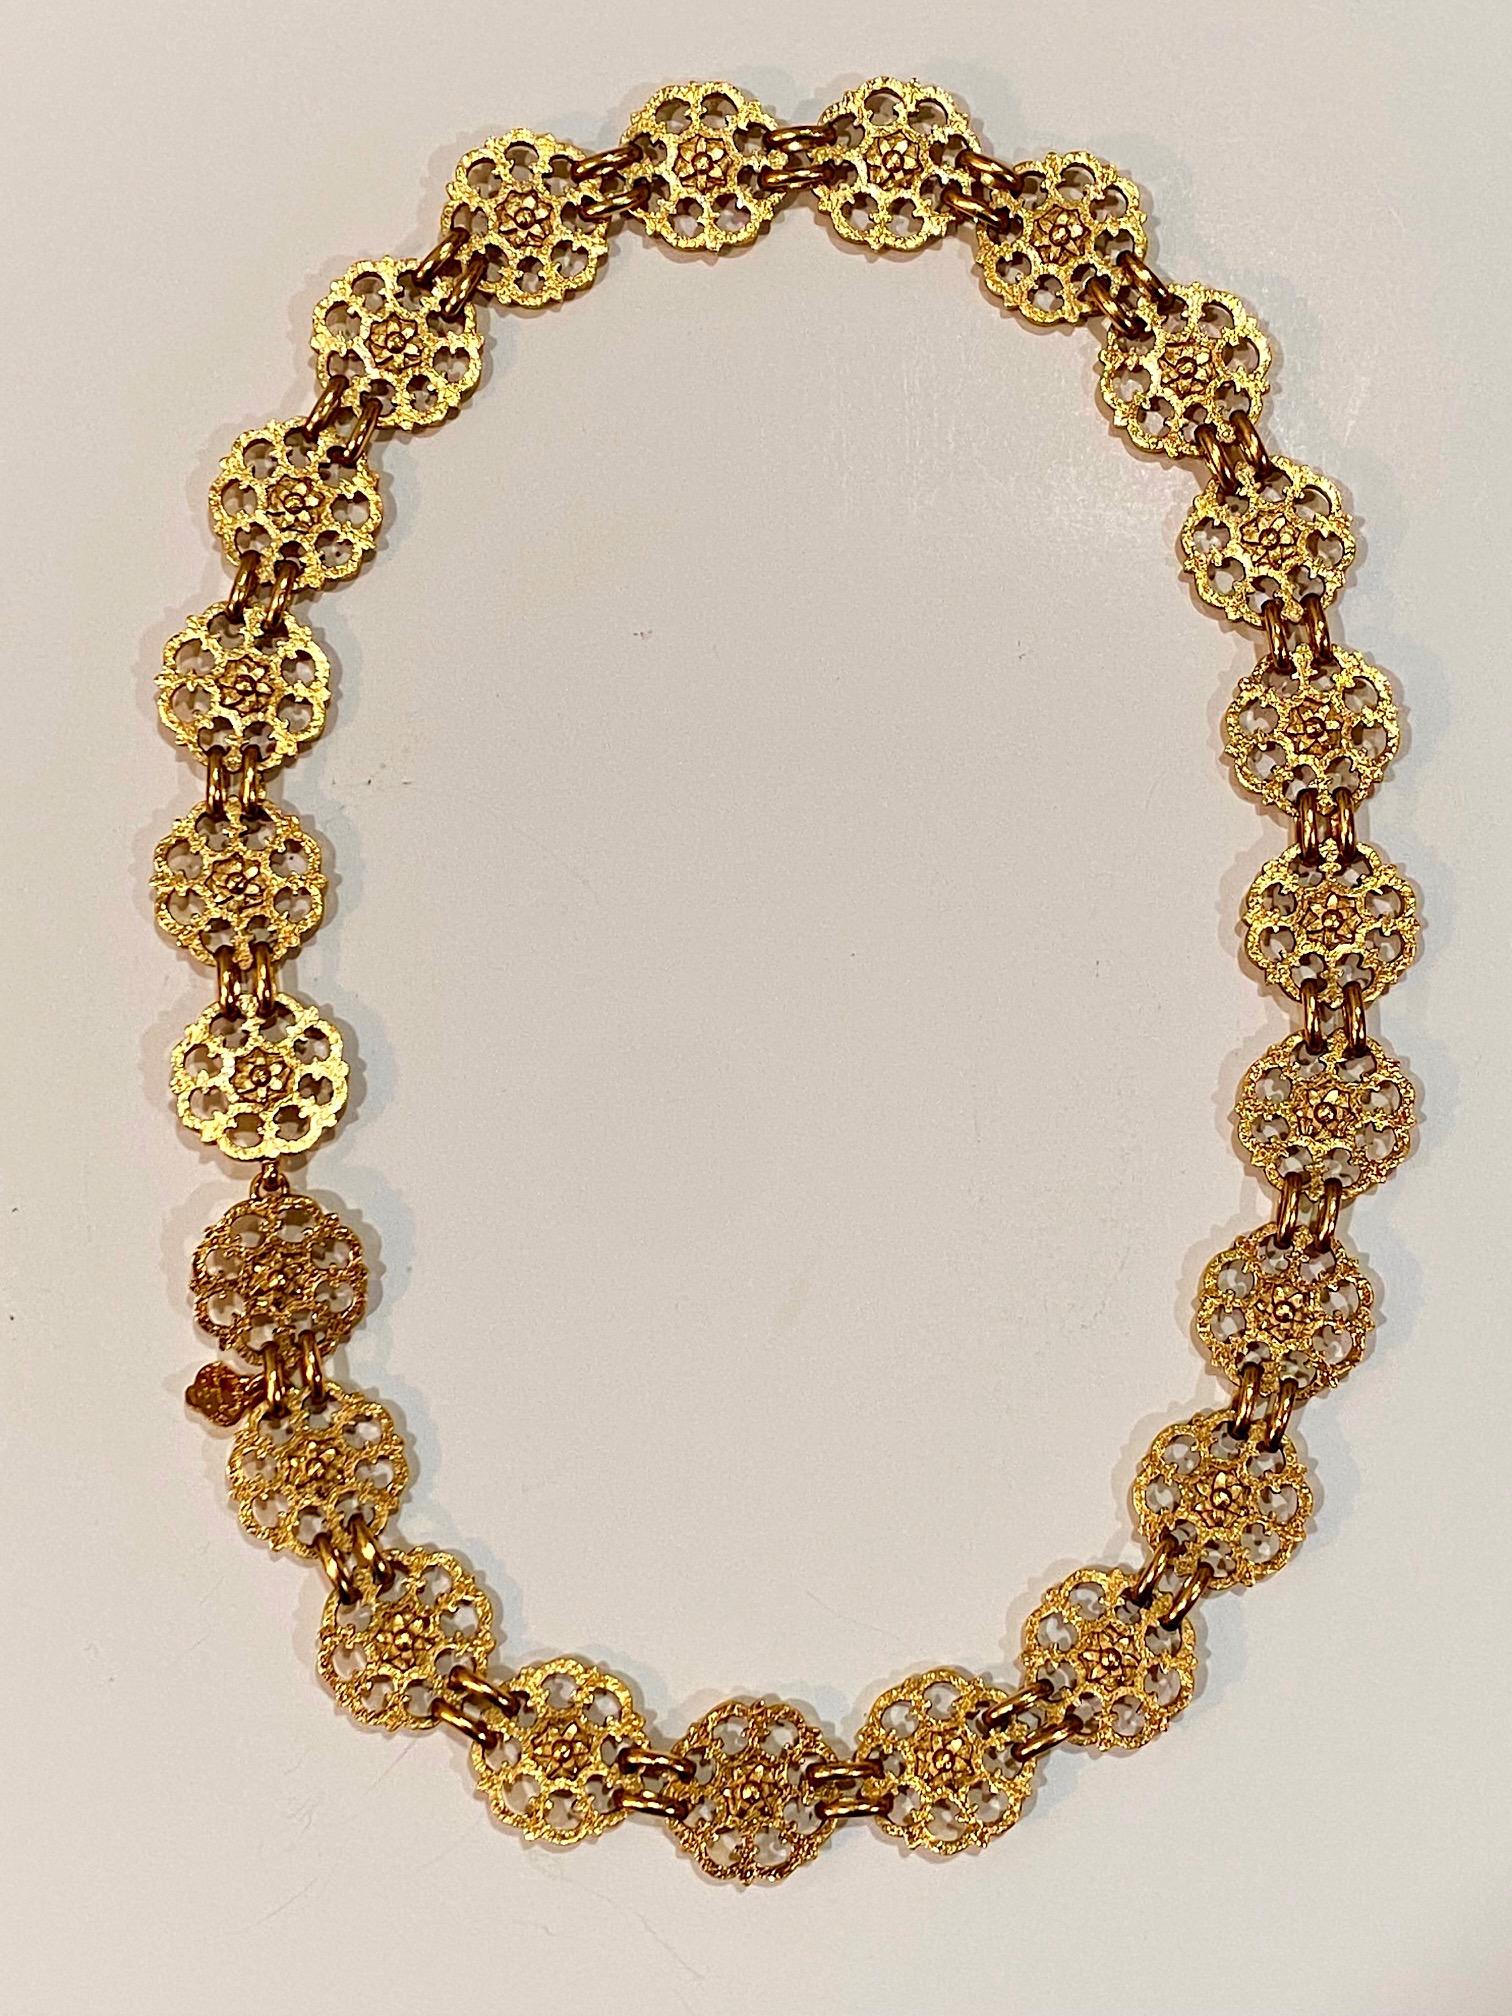 Eine schöne und in ausgezeichnetem Zustand 1980er Yves Saint Laurent Gold Gürtel oder Halskette. Der Gürtel hat einen kleinen Haken- und Ösenverschluss und kann leicht als Halskette getragen werden, wie auf den Fotos in Form einer Halskette gezeigt.